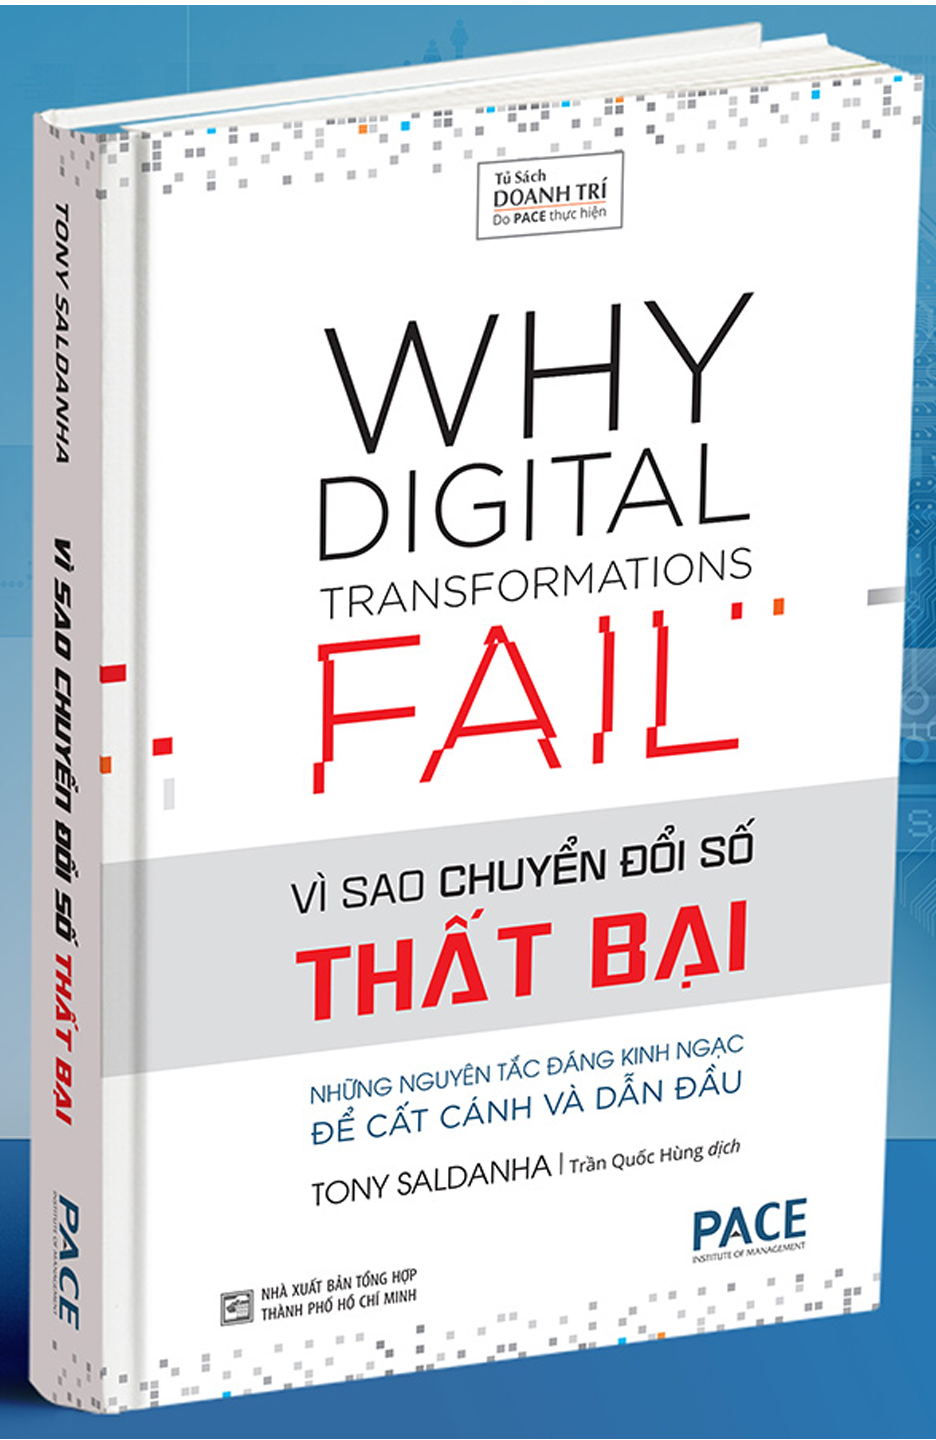 Vì Sao Chuyển Đổi Số Thất Bại (Why Digital Transformations Fail).